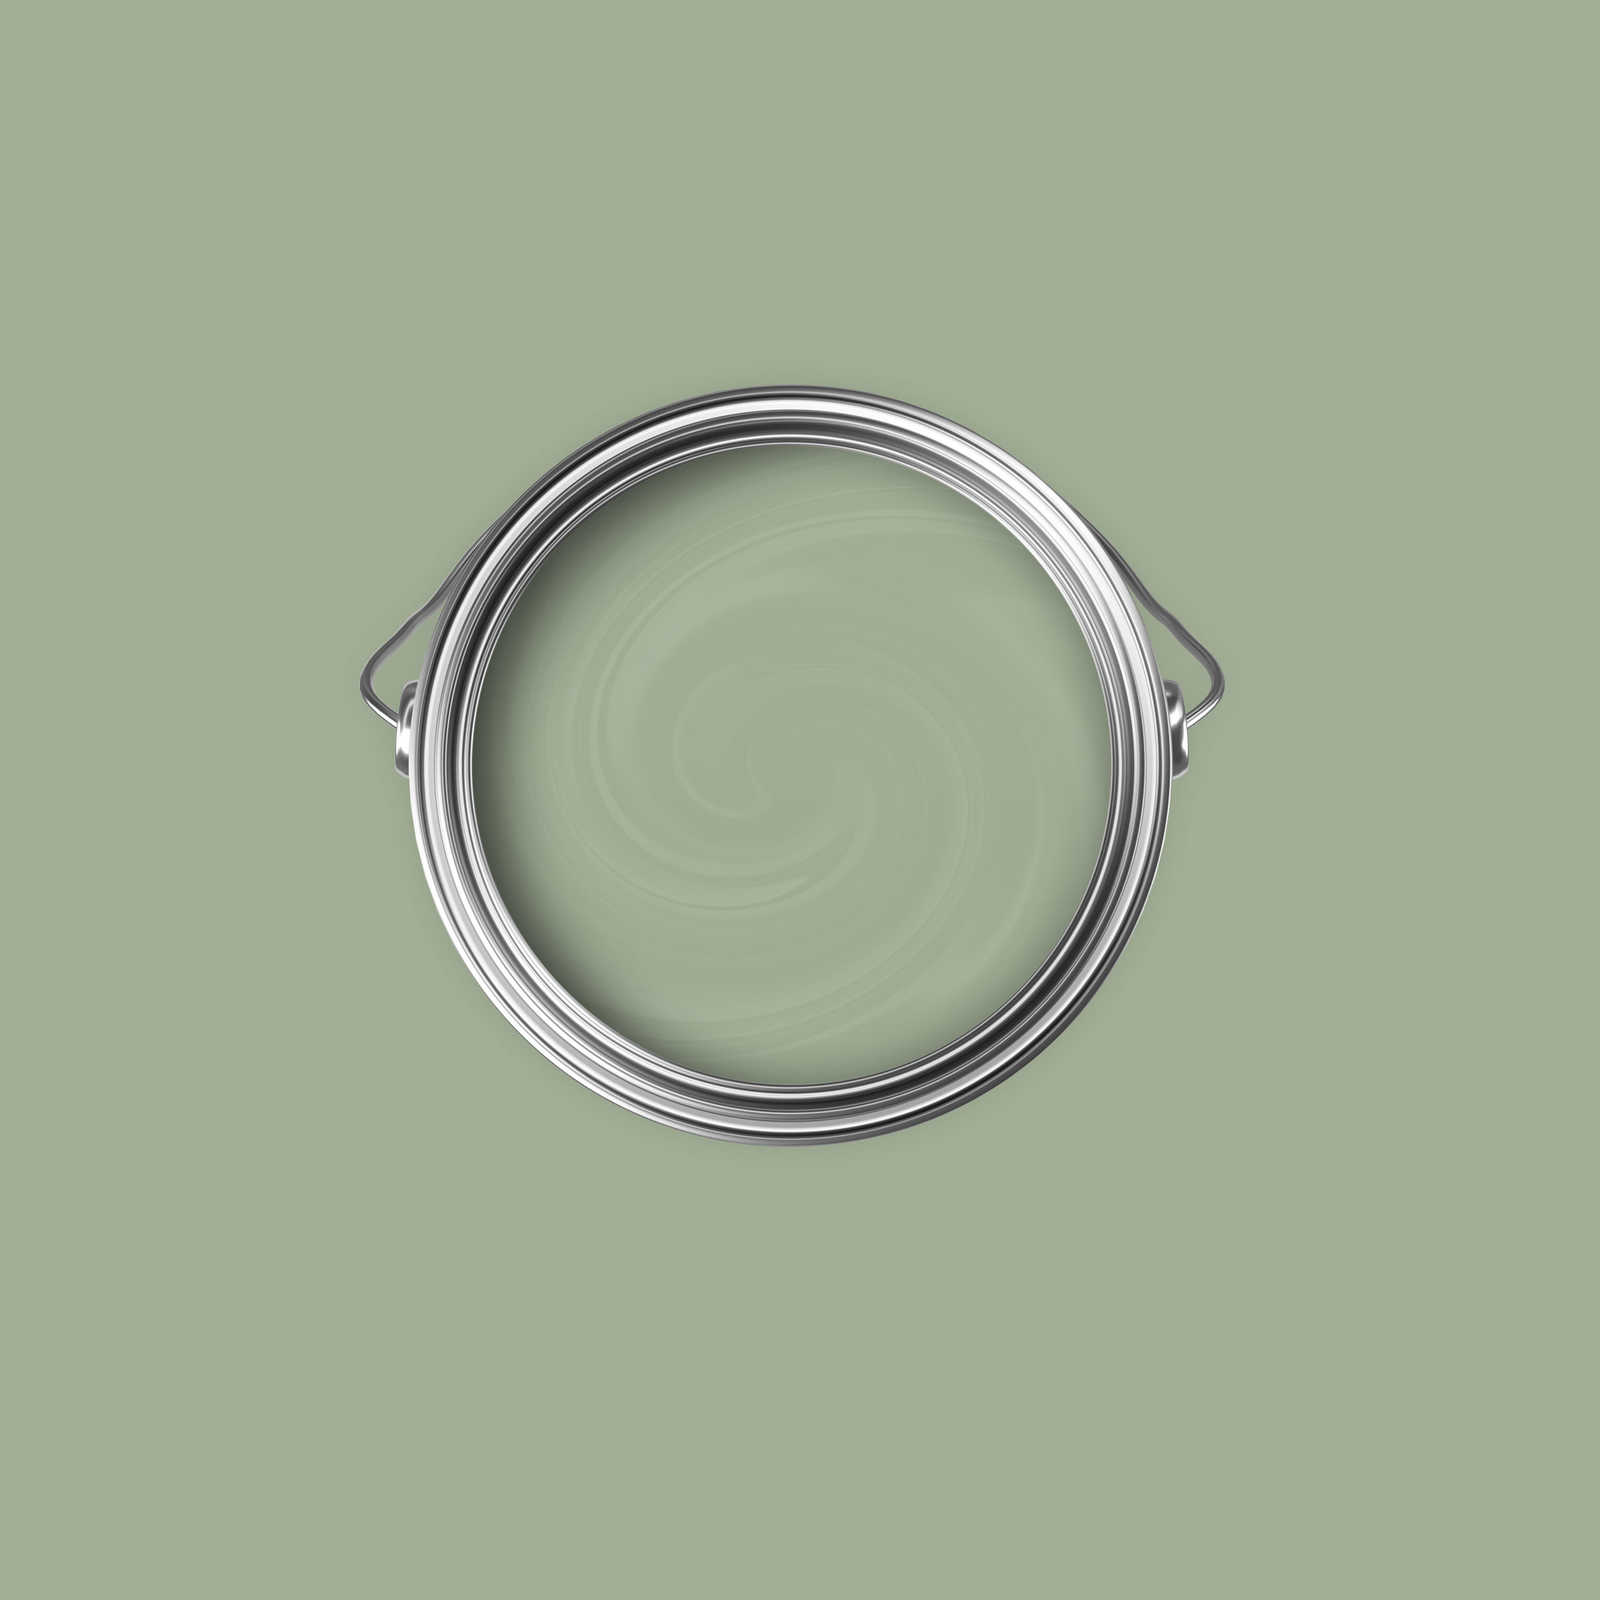             Premium Muurverf Aardolijfgroen »Gorgeous Green« NW502 – 2,5 liter
        